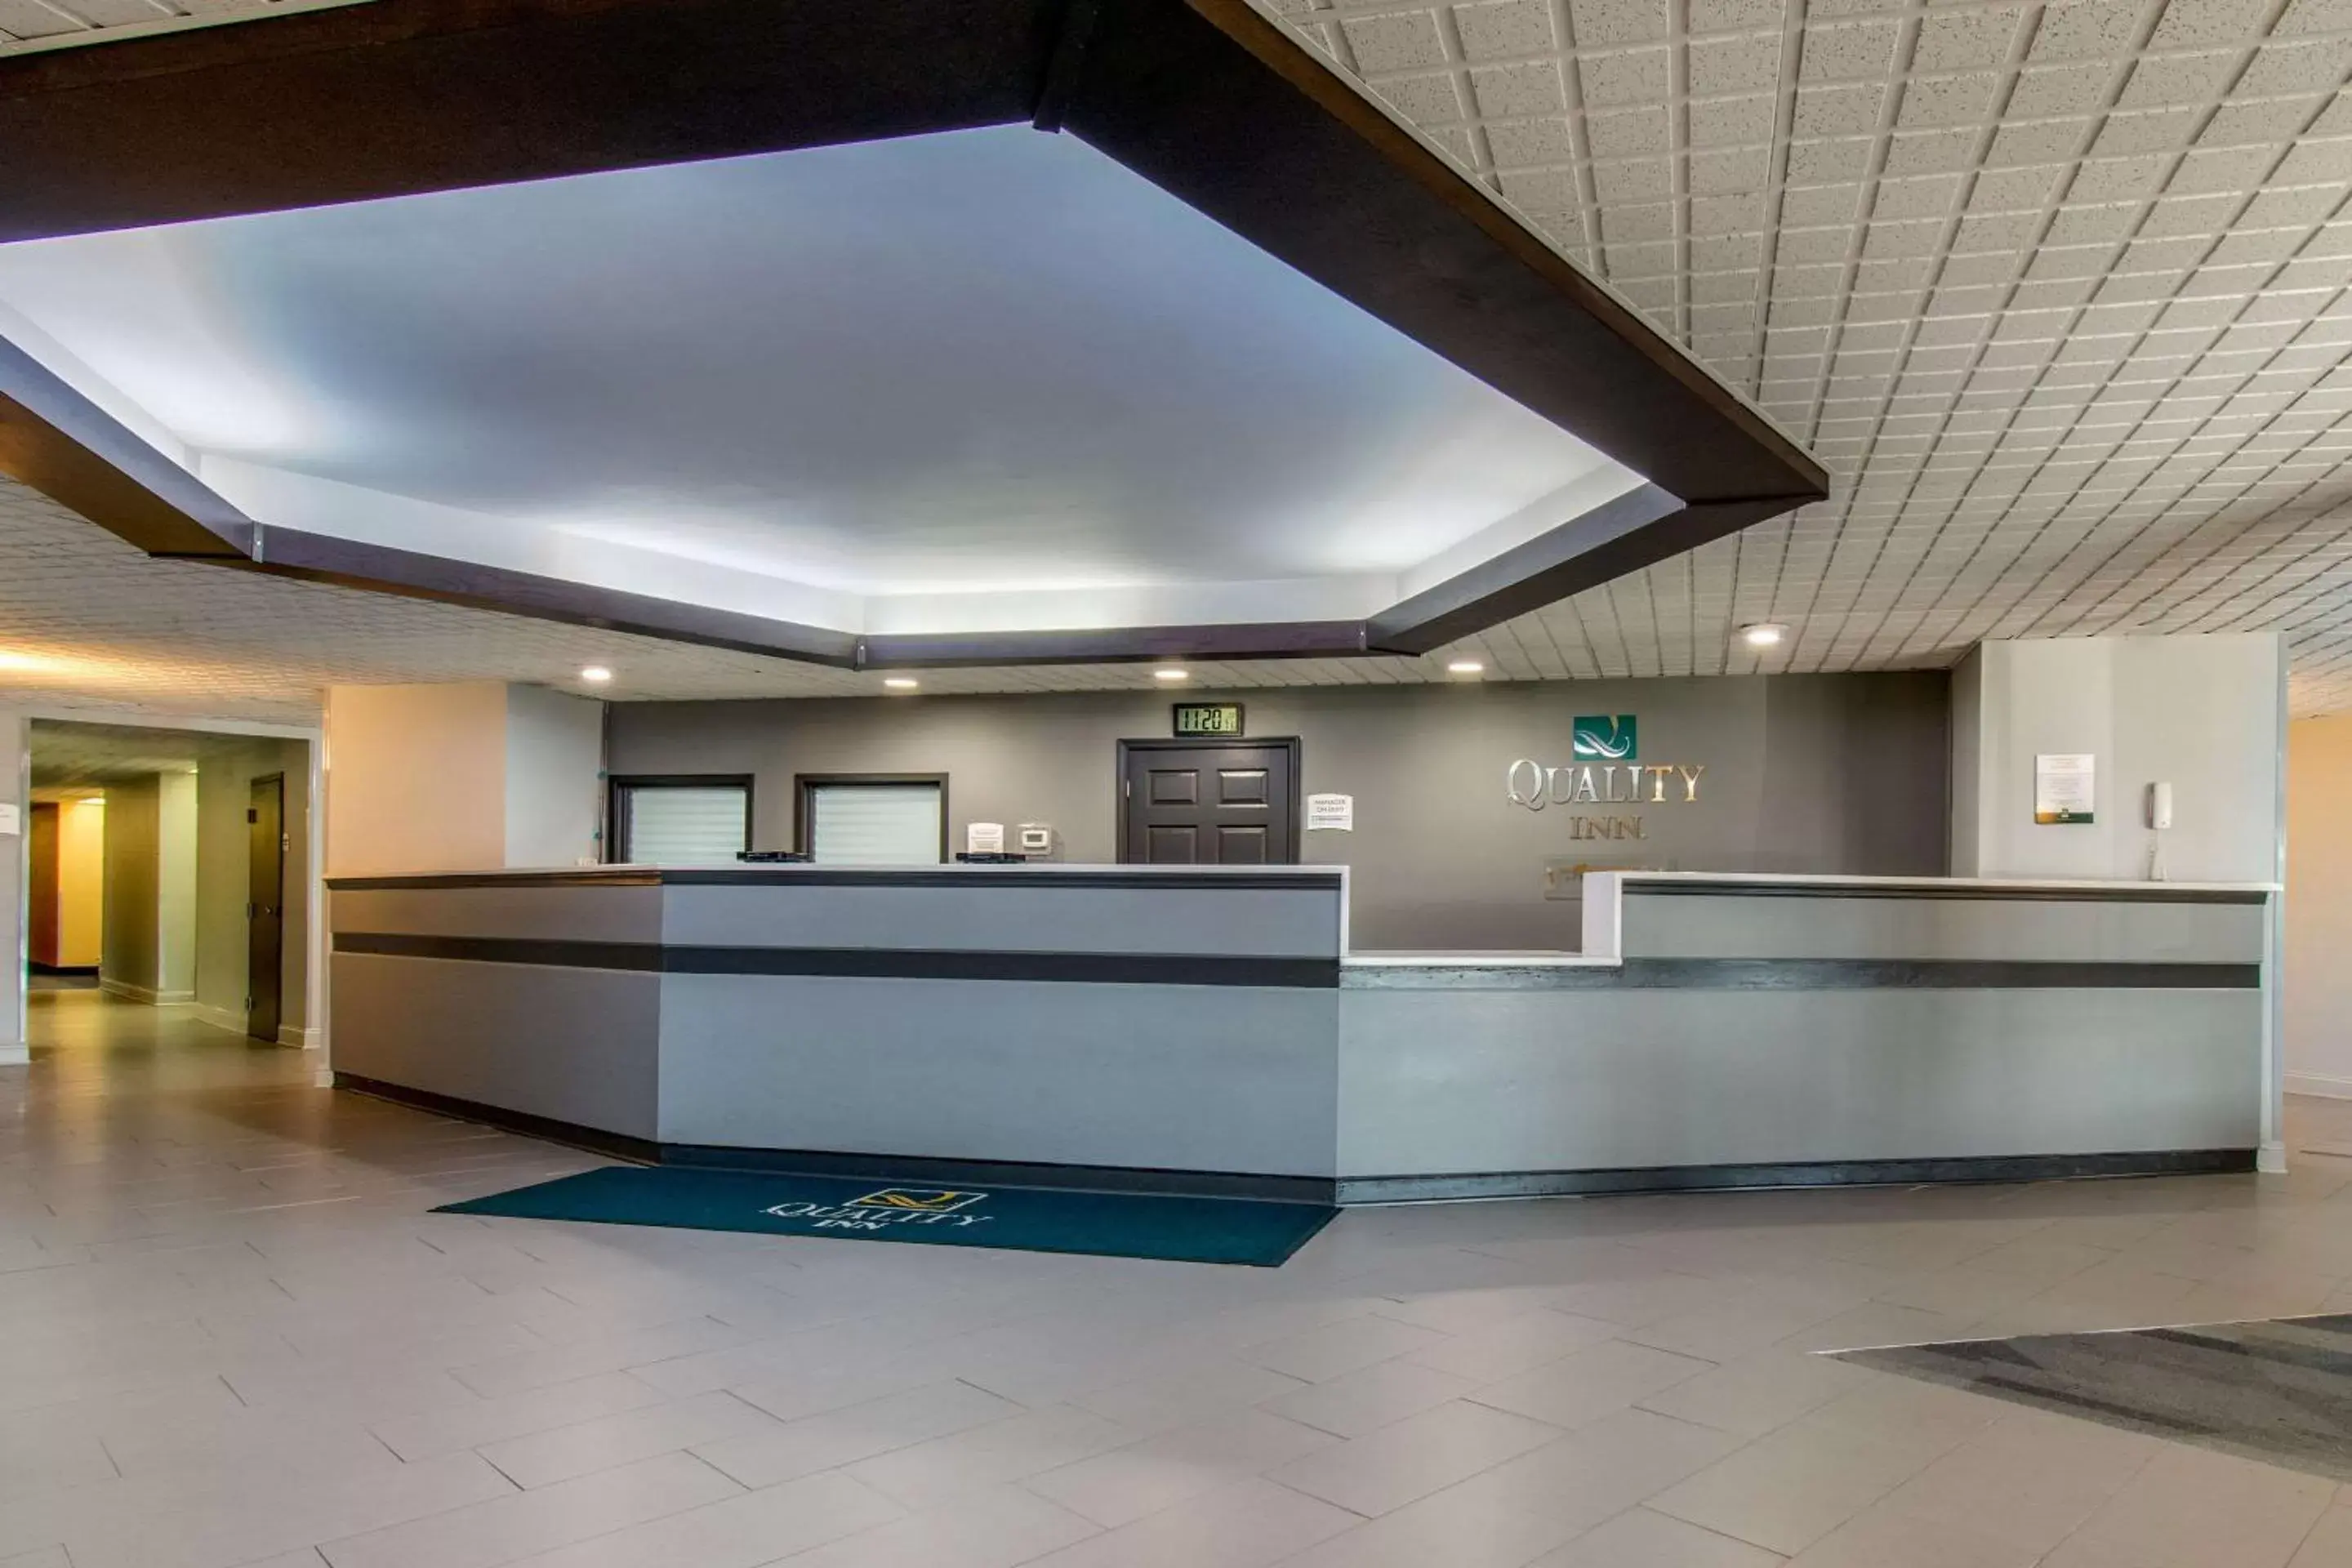 Lobby or reception, Lobby/Reception in Quality Inn Carlisle PA